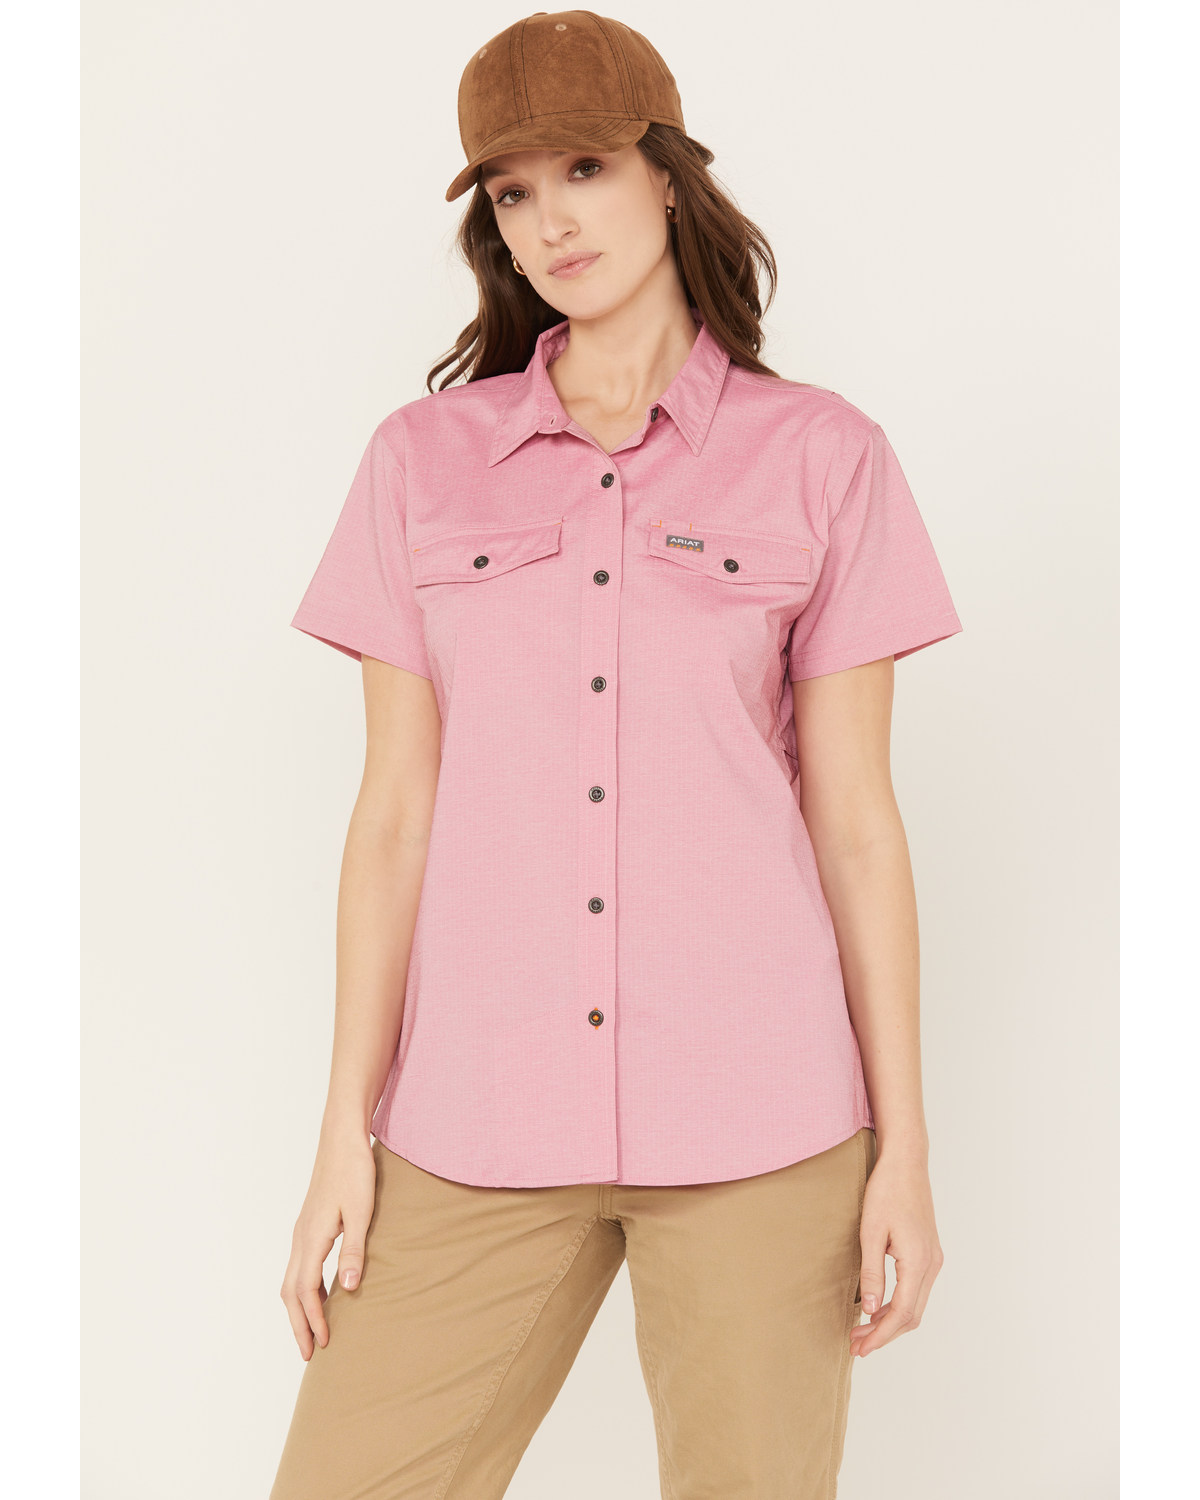 Ariat Women's Rebar VentTEK Short Sleeve Button Down Western Work Shirt